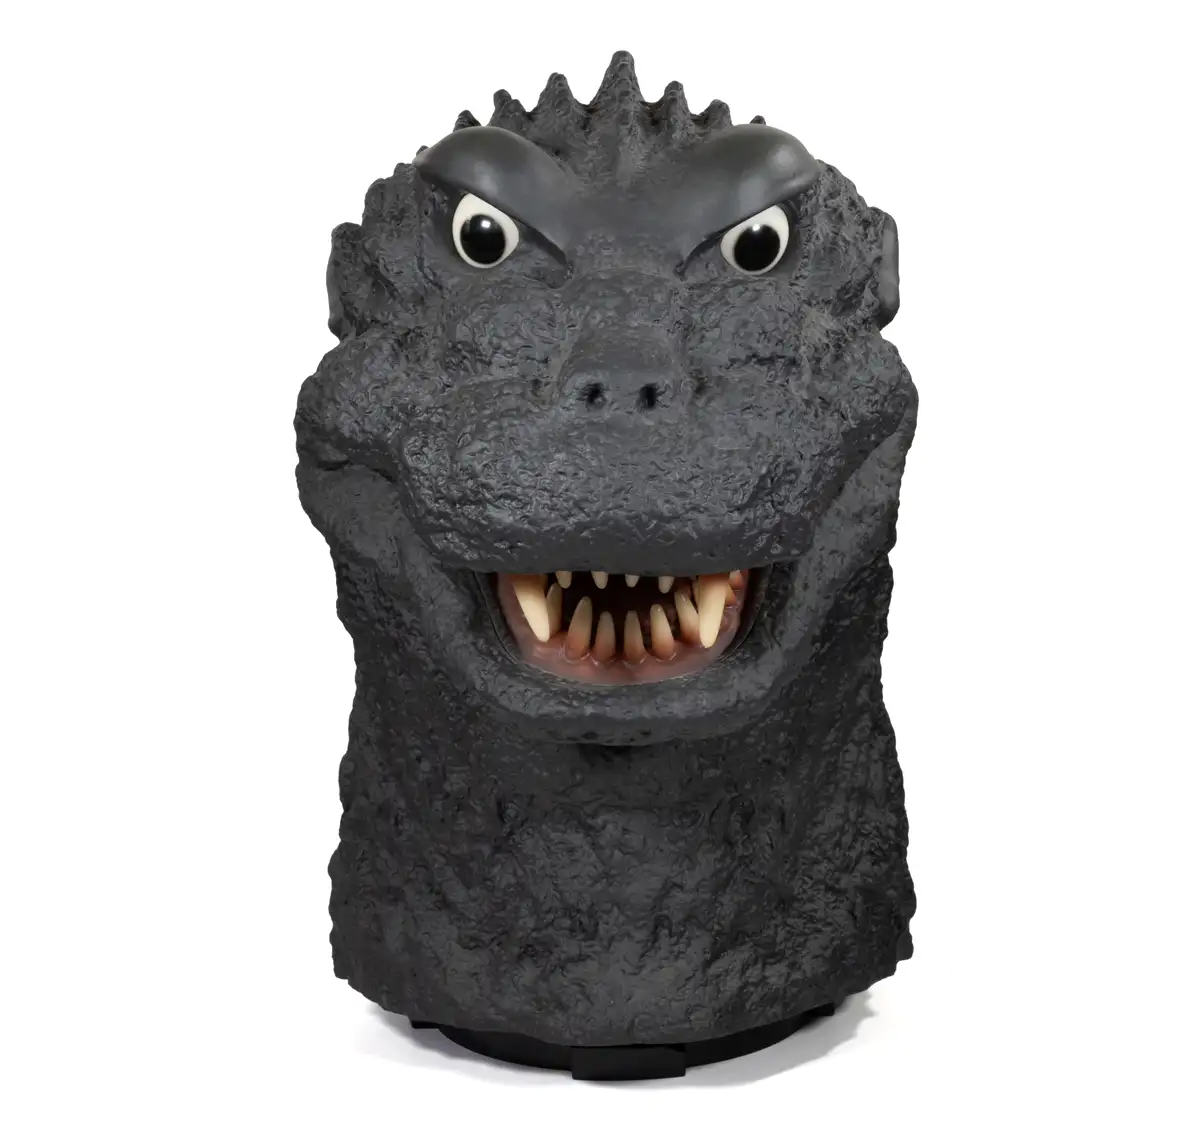 Godzilla Finał Box: Godzilla 1954 Head